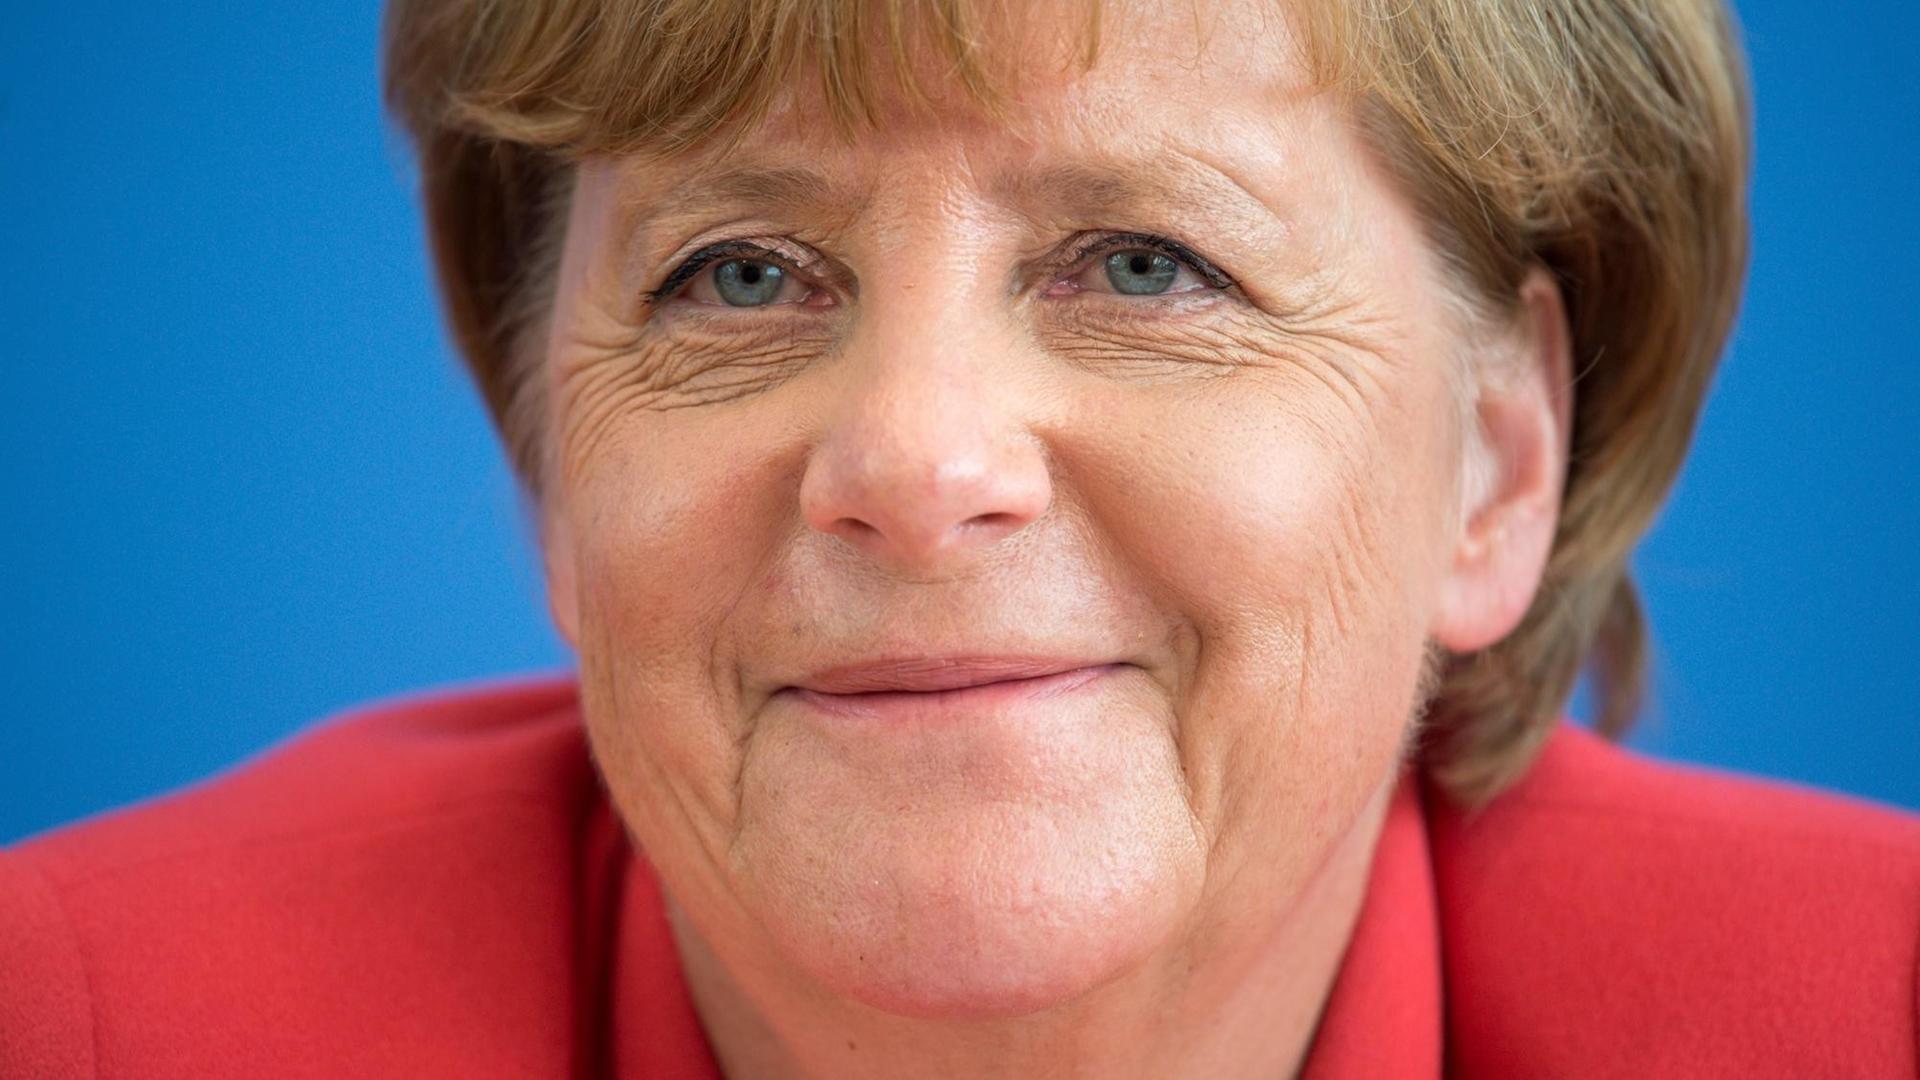 Auf dem Bild ist eine Nahaufnahme von Kanzlerin Merkel zu sehen. Sie blickt freundlich in die Kamera und lächelt leicht.